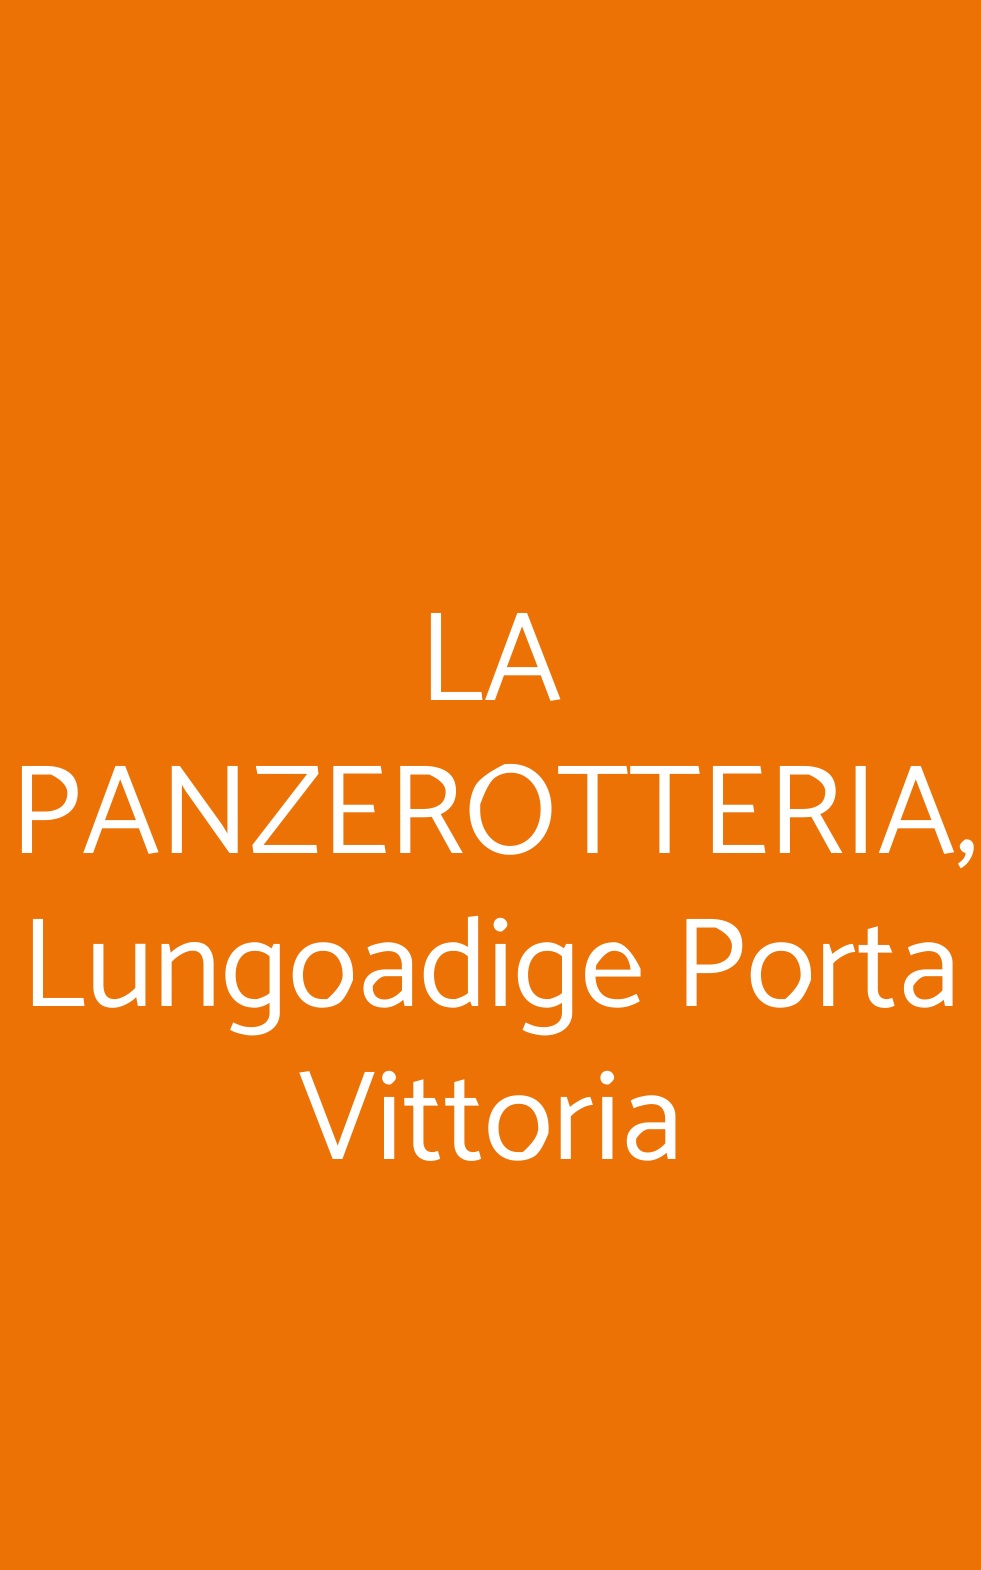 LA PANZEROTTERIA, Lungoadige Porta Vittoria Verona menù 1 pagina